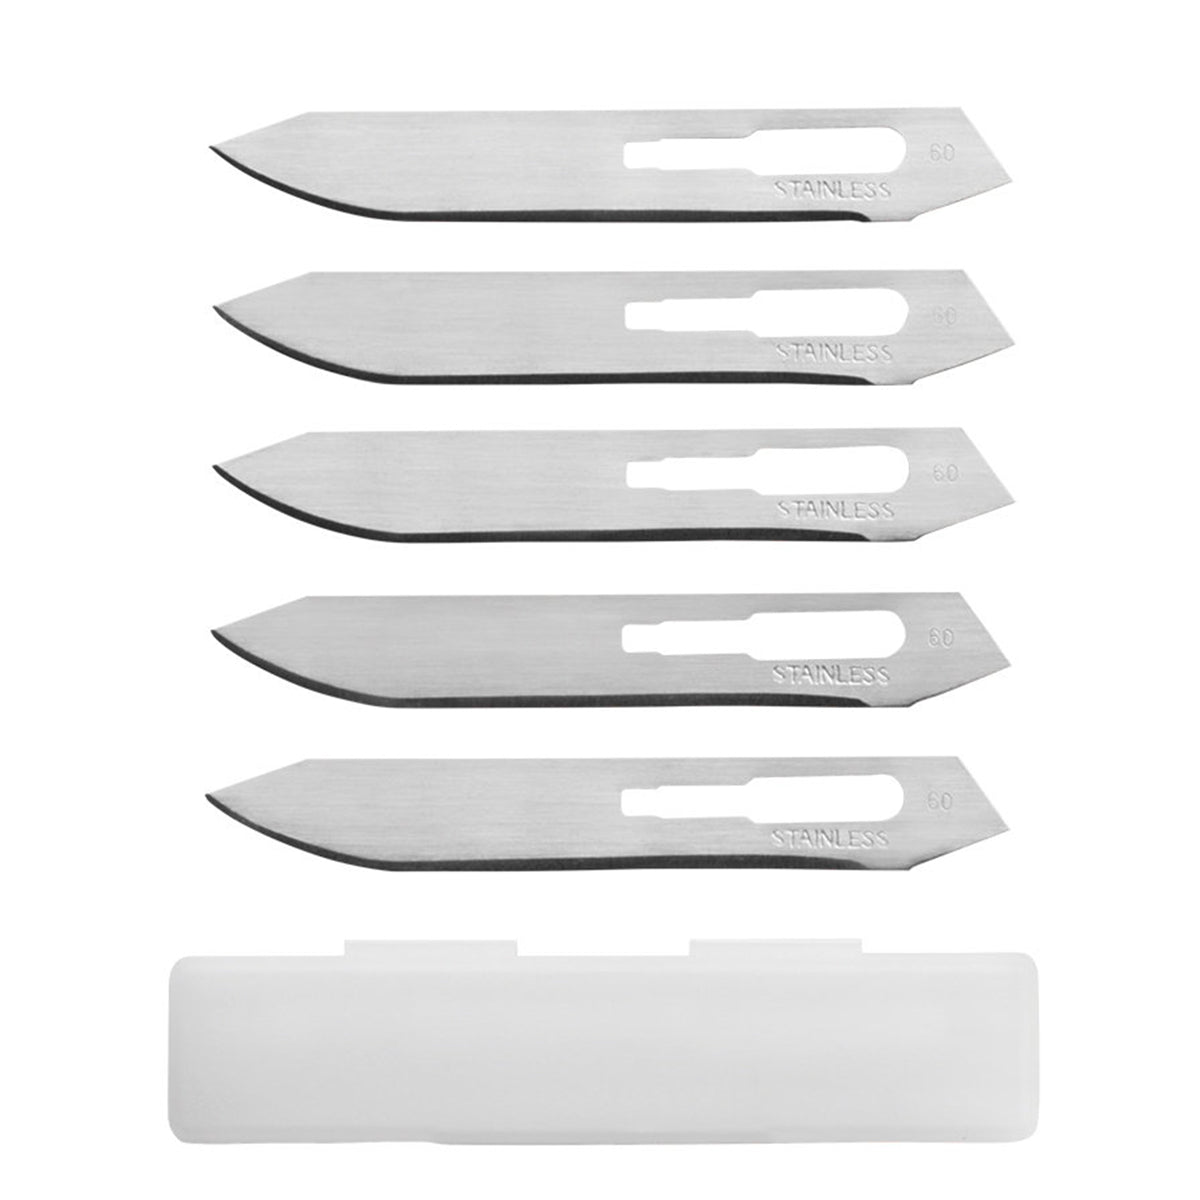 Gerber Vital Pocket Folder Replaceable Blade Knife in Gerber Vital Pocket Folder Replaceable Blade Knife by Gerber | Gear - goHUNT Shop by GOHUNT | Gerber - GOHUNT Shop